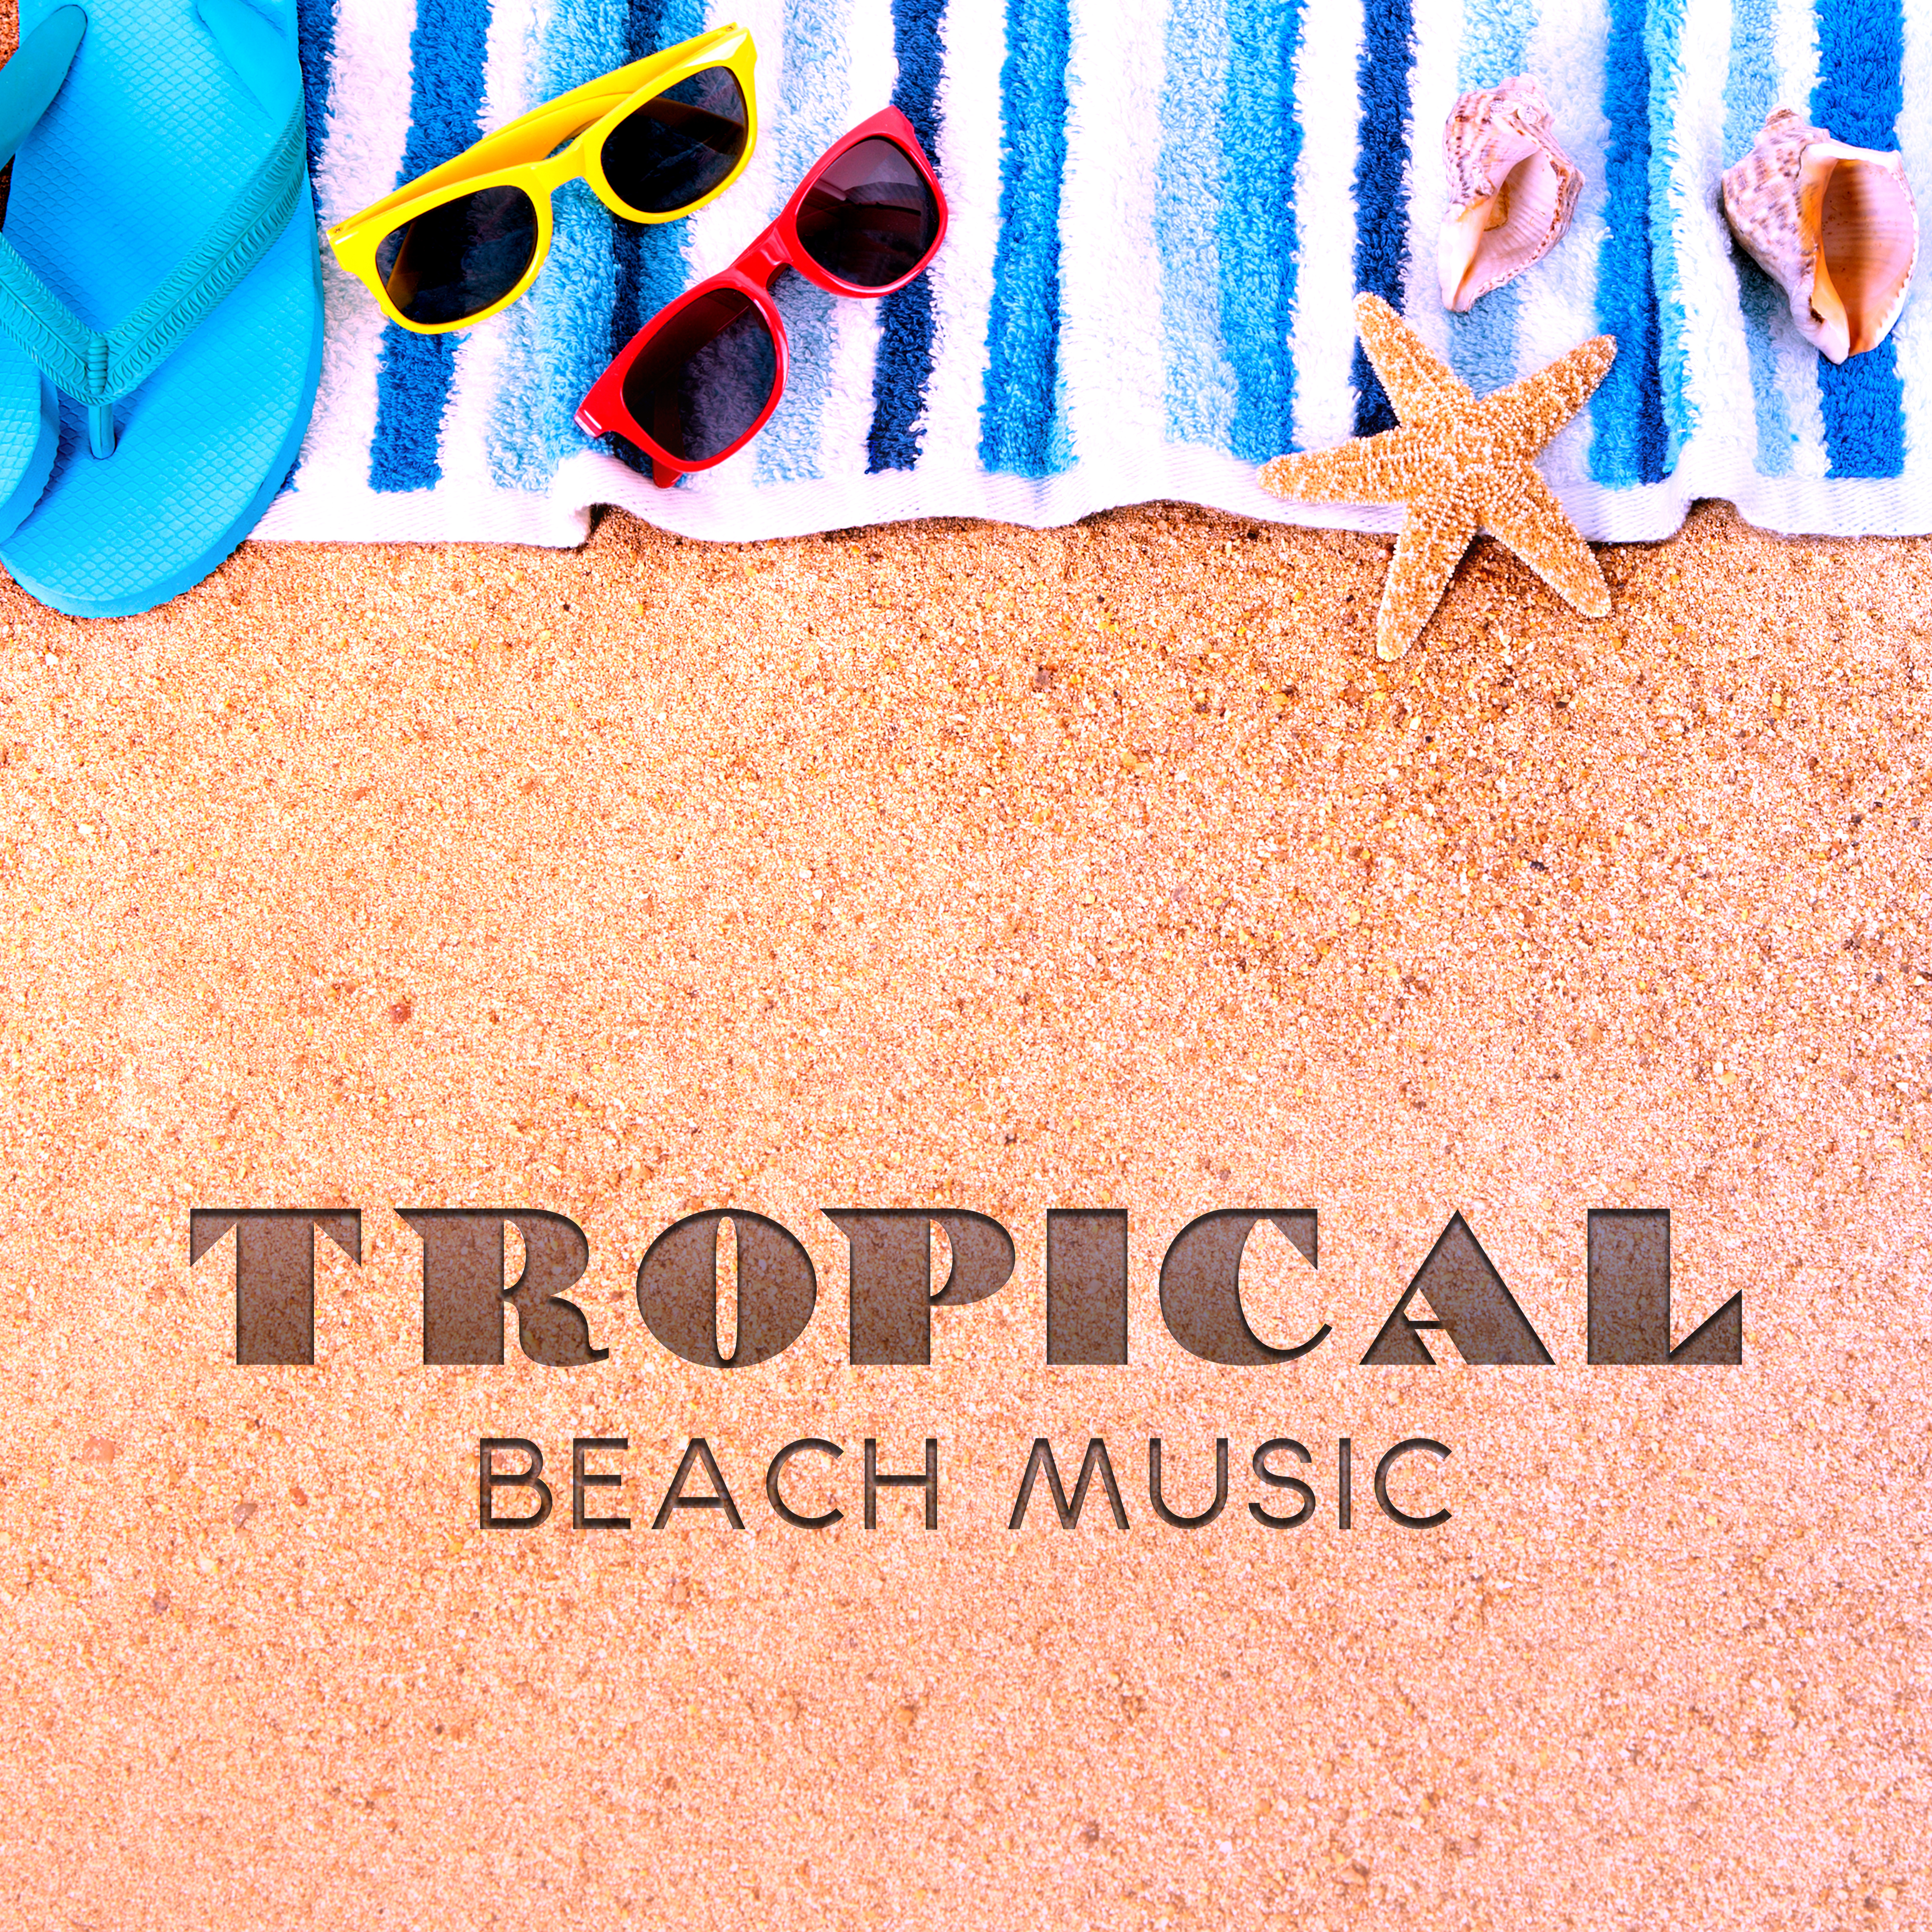 Tropical Beach Music